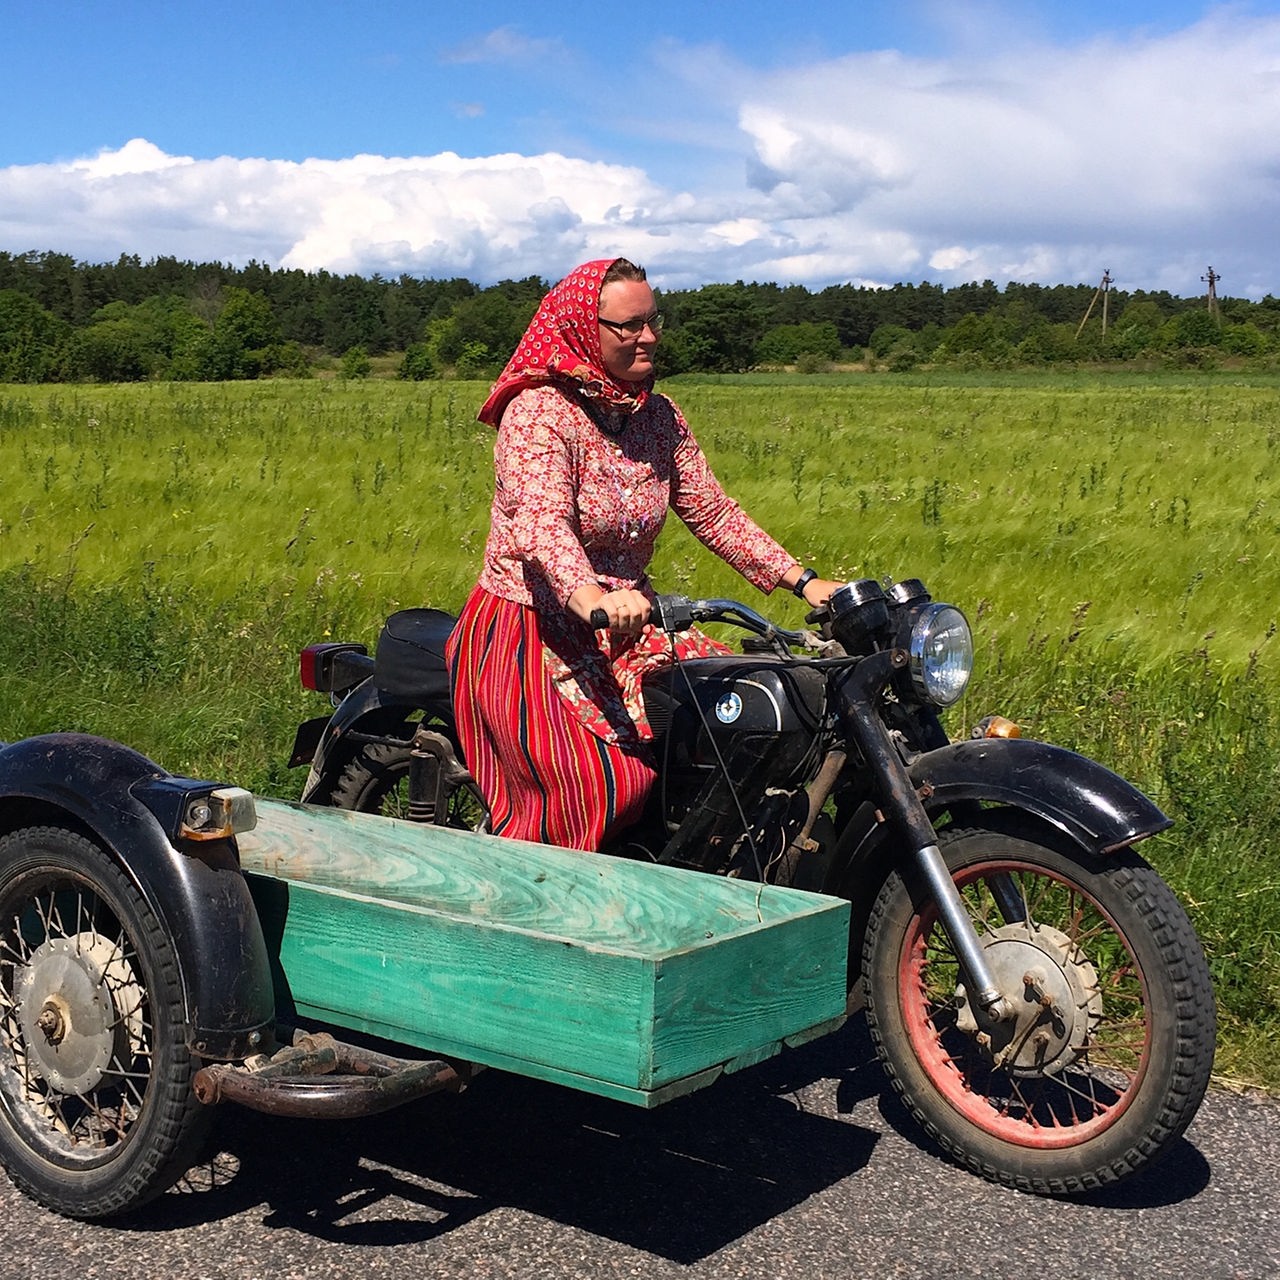 Eine Frau mit rotem Rock fährt auf einem Moped mit Beiwagen.